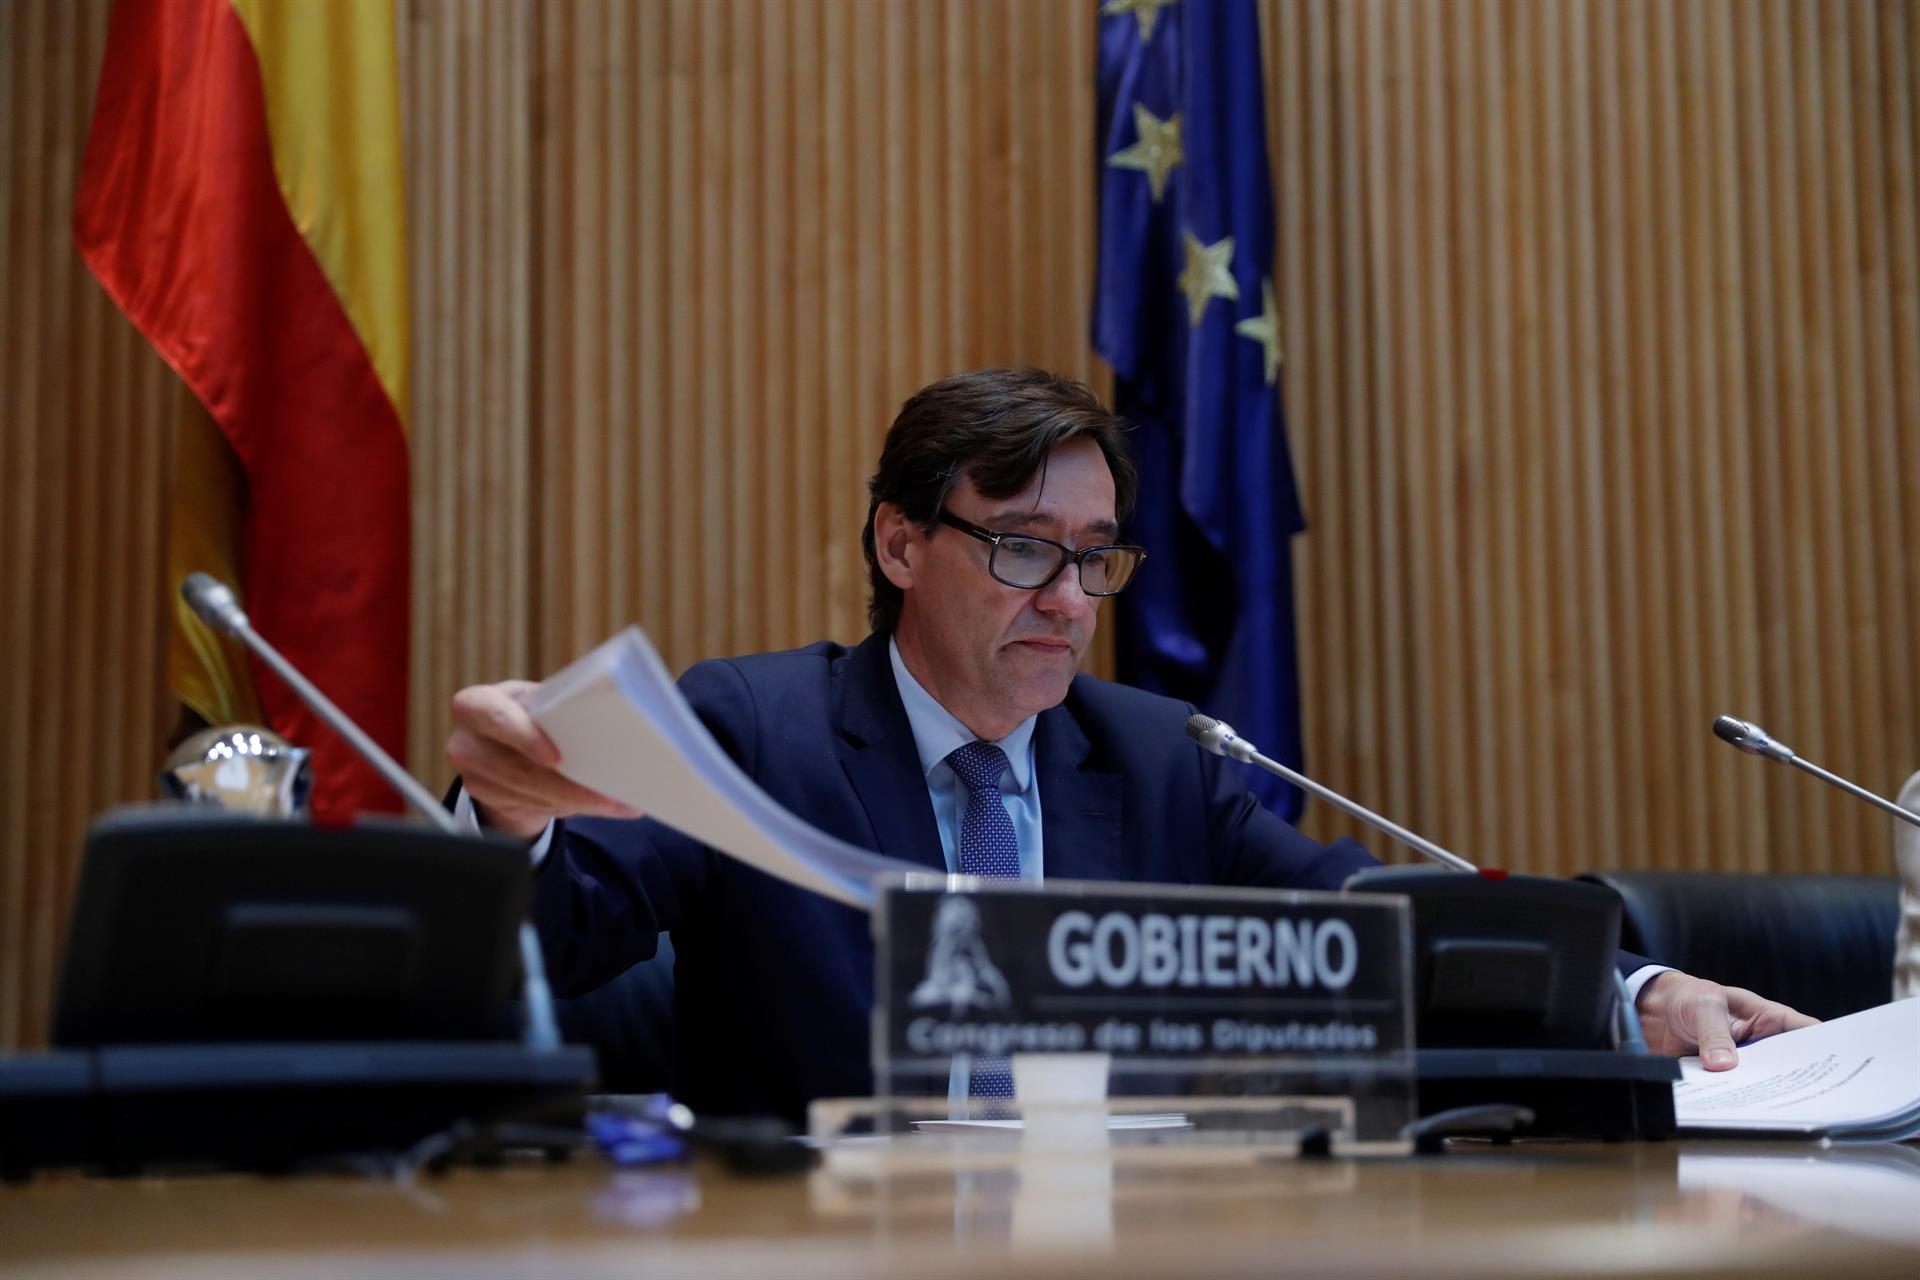 El ministro de Sanidad, Salvador Illa, comparece este jueves ante la Comisión de Sanidad y Consumo para actualizar la información sobre la situación y las medidas adoptadas en relación al COVID-19. En Madrid (España), a 30 de abril de 2020. - Pool